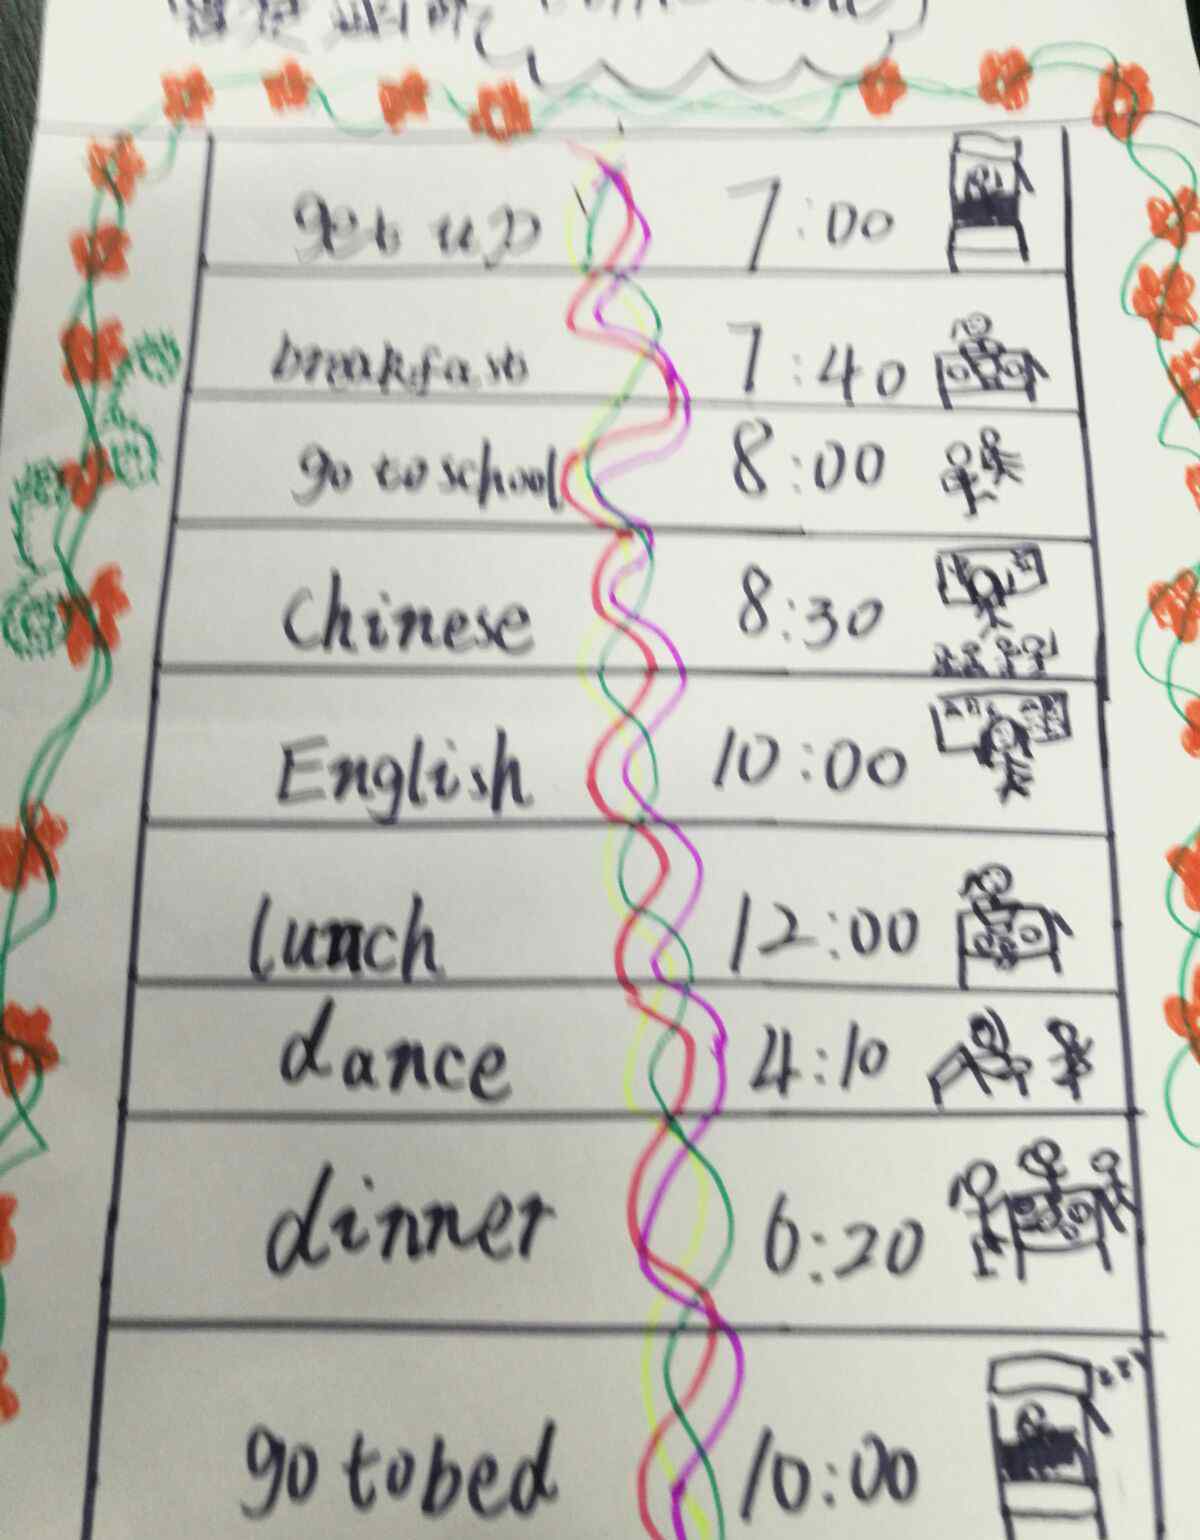 英语时间表 英文时间表展示